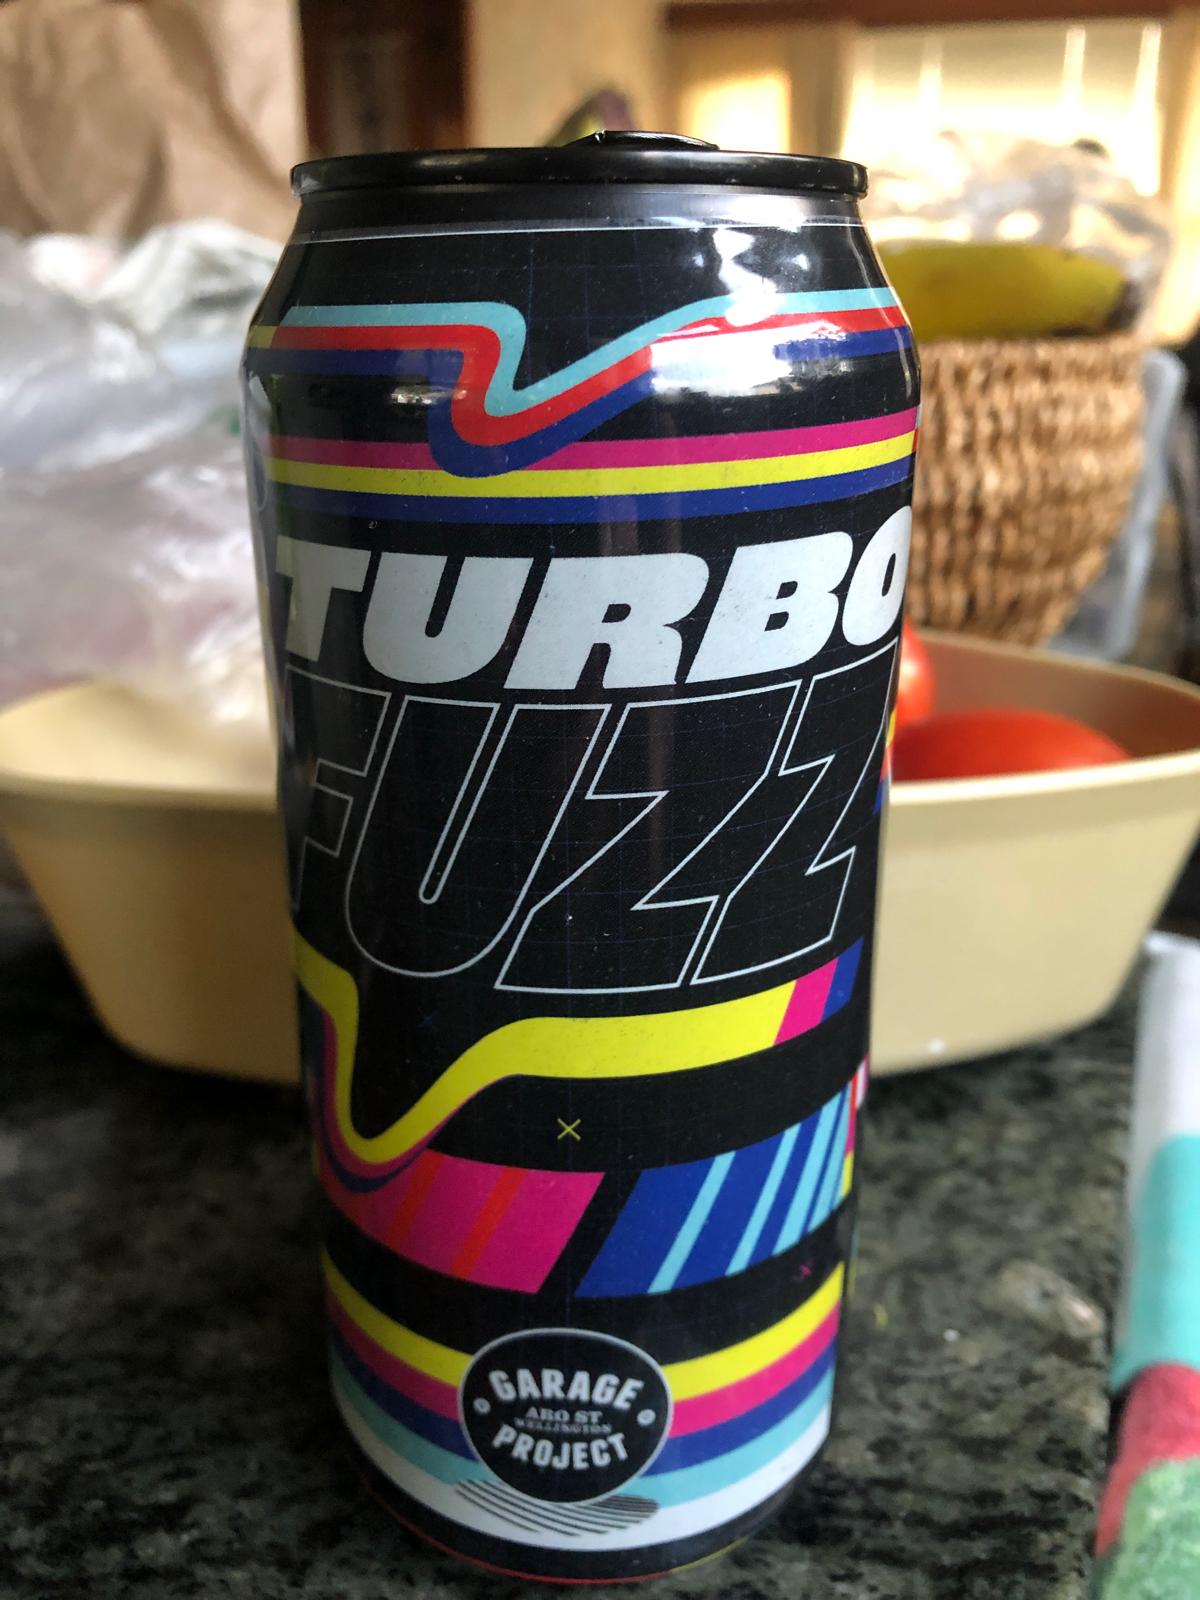 Turbo Fuzz